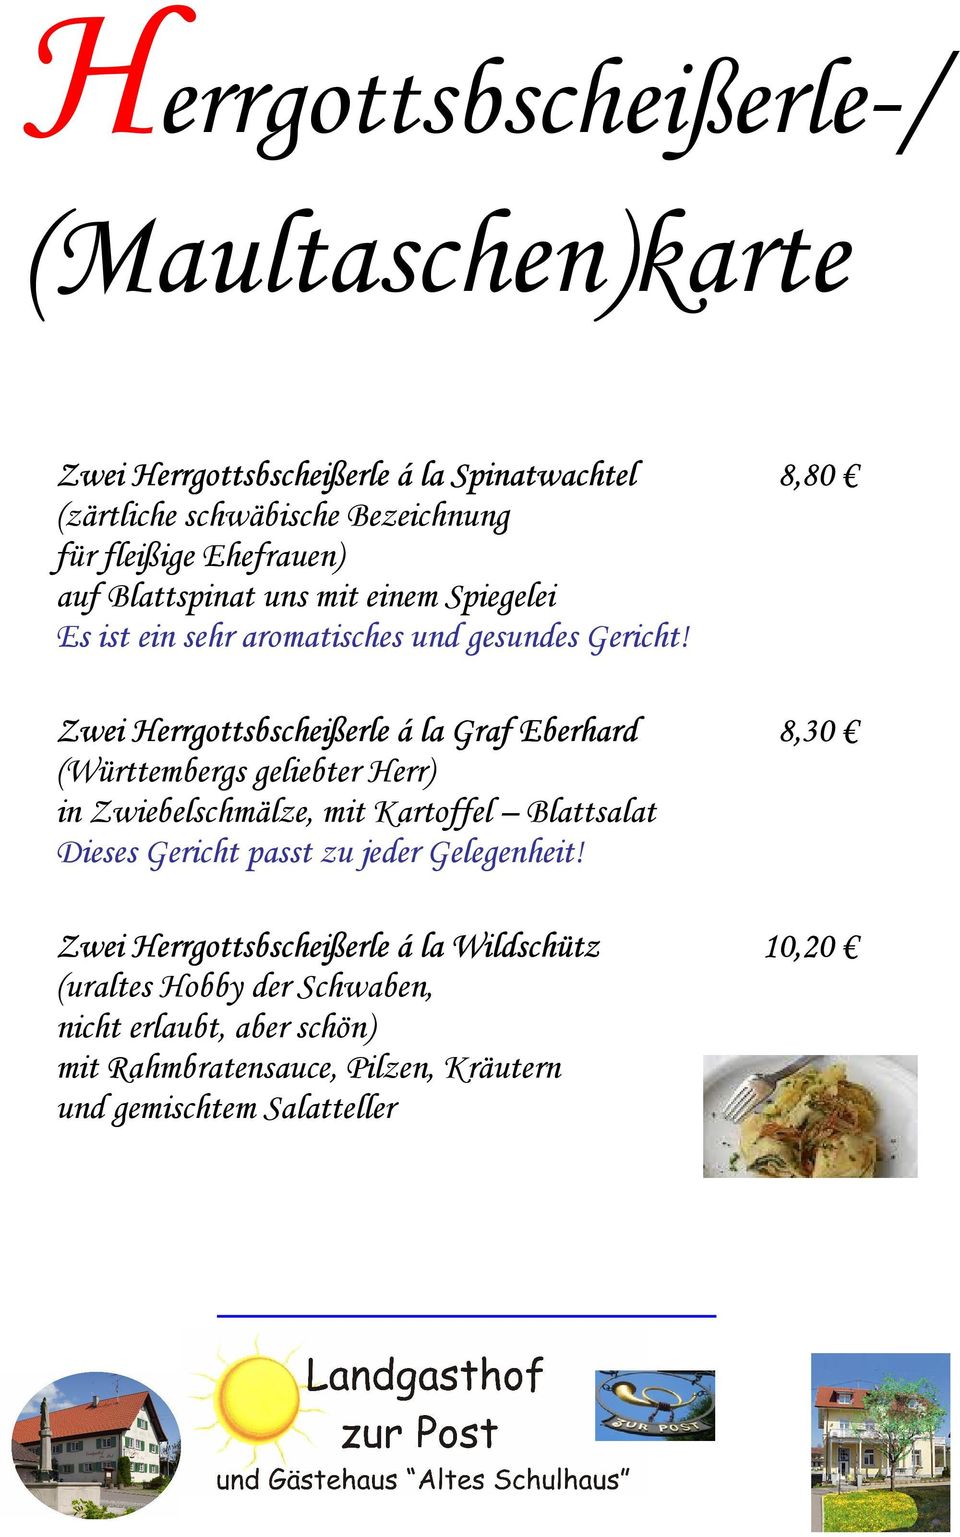 Zwei Herrgottsbscheißerle á la Graf Eberhard 8,30 (Württembergs geliebter Herr) in Zwiebelschmälze, mit Kartoffel Blattsalat Dieses Gericht